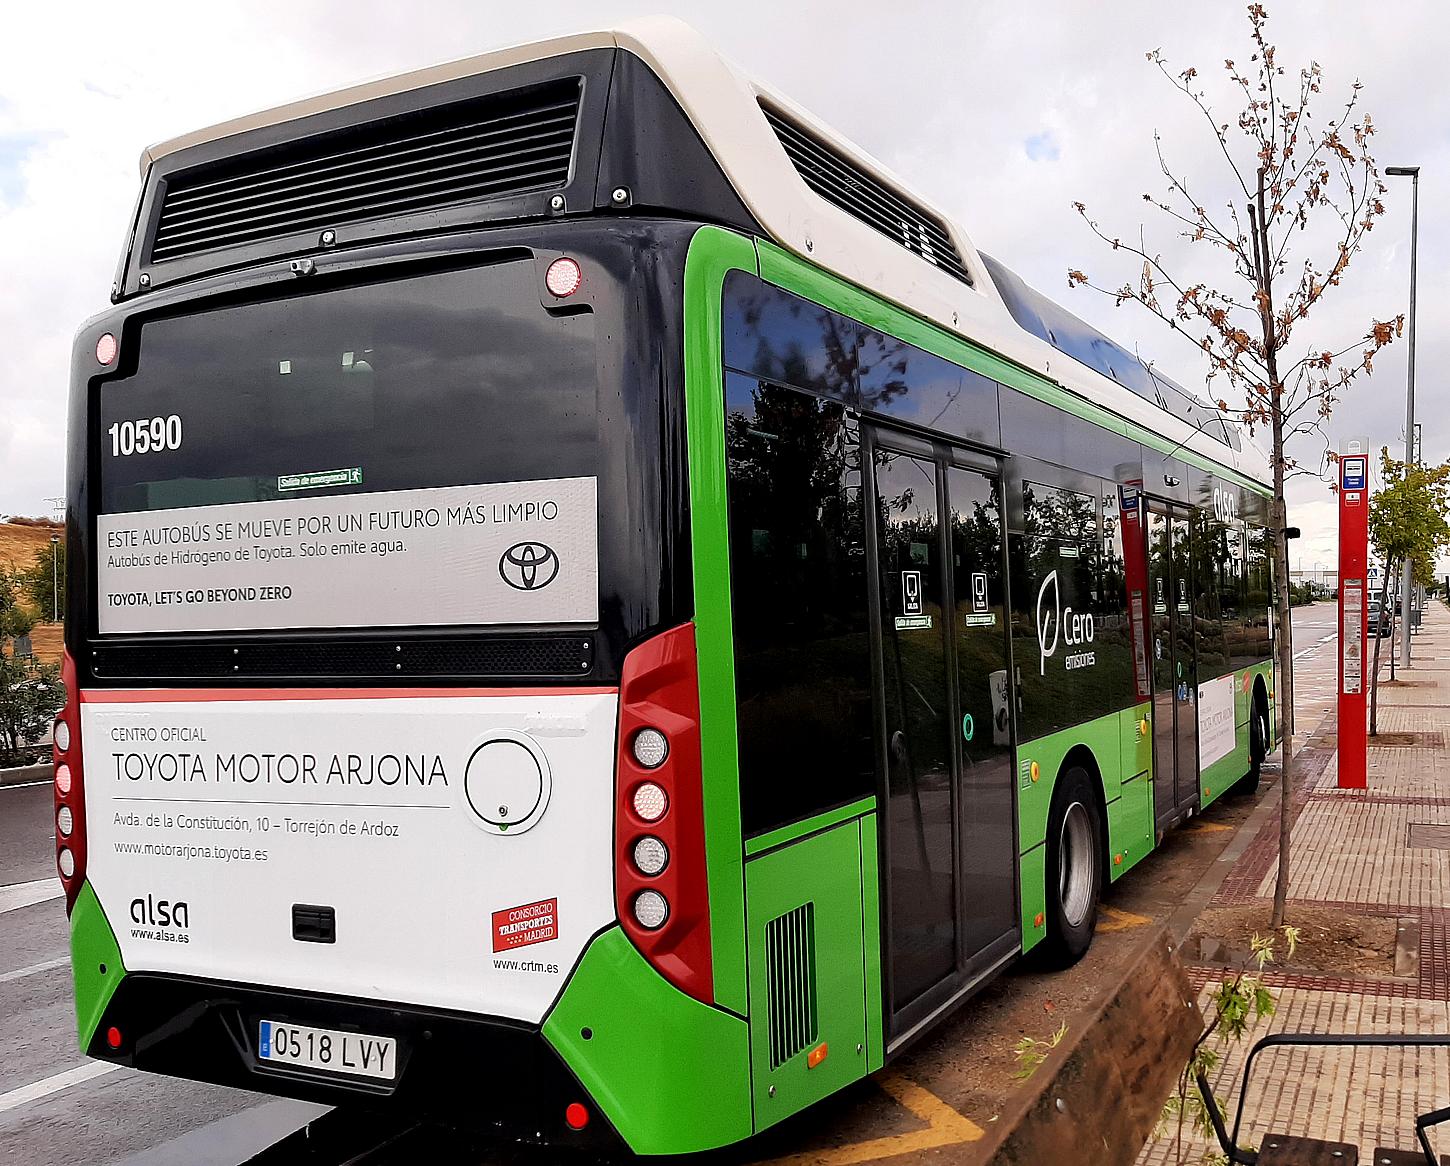 Toyota Motor Arjona, patrocinador de la primera línea de autobús urbano movido con hidrógeno de la Comunidad de Madrid que produce cero emisiones contaminantes